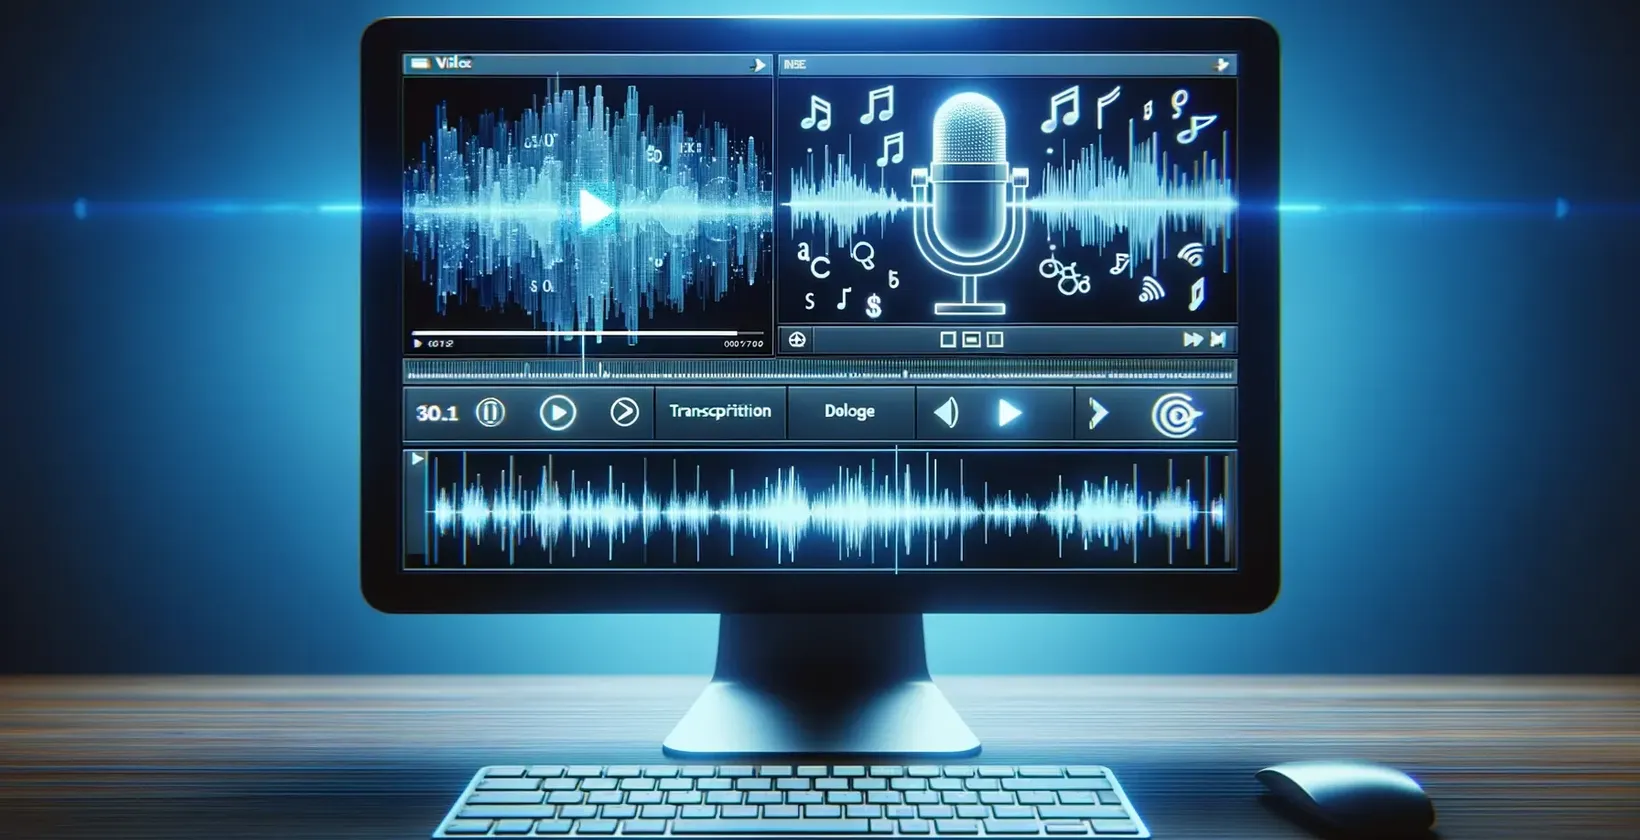 En dataskjerm som viser musikknoter og en mikrofon som brukes til å transkribere video til tekst.